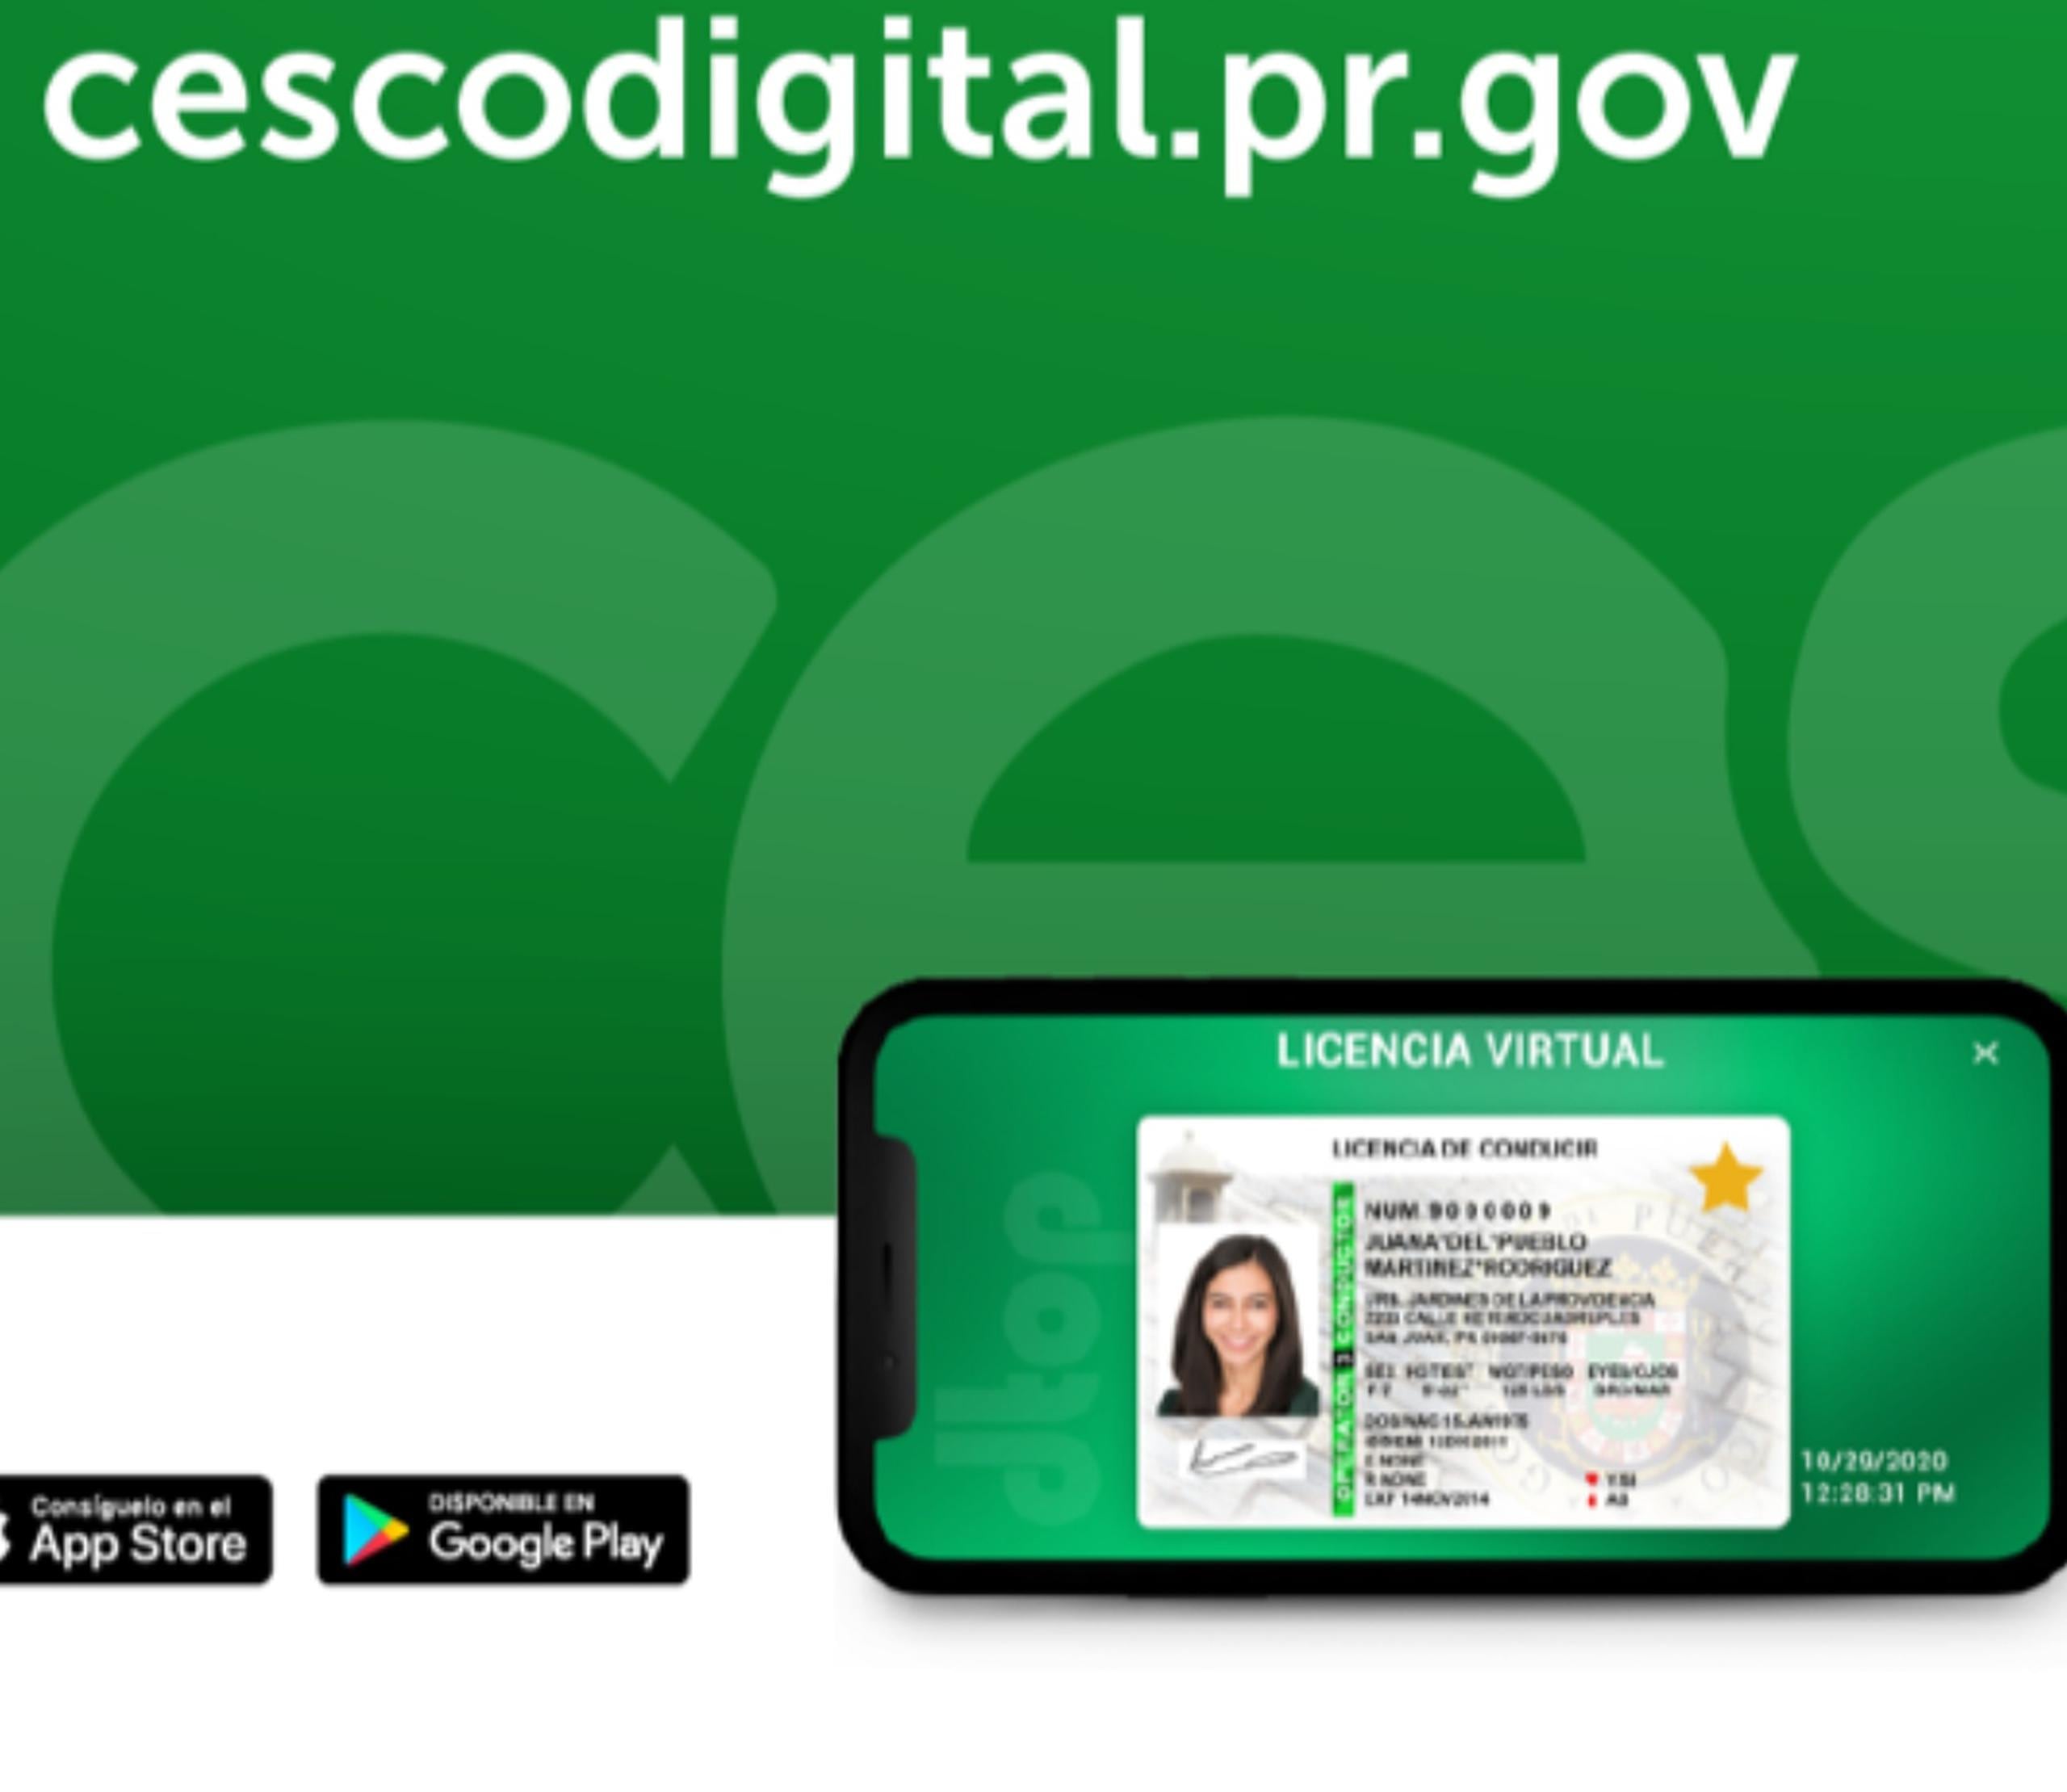 La licencia de conducir virtual se accede desde la aplicación CESCO Digital que está disponible tanto para teléfonos iPhone como Android.